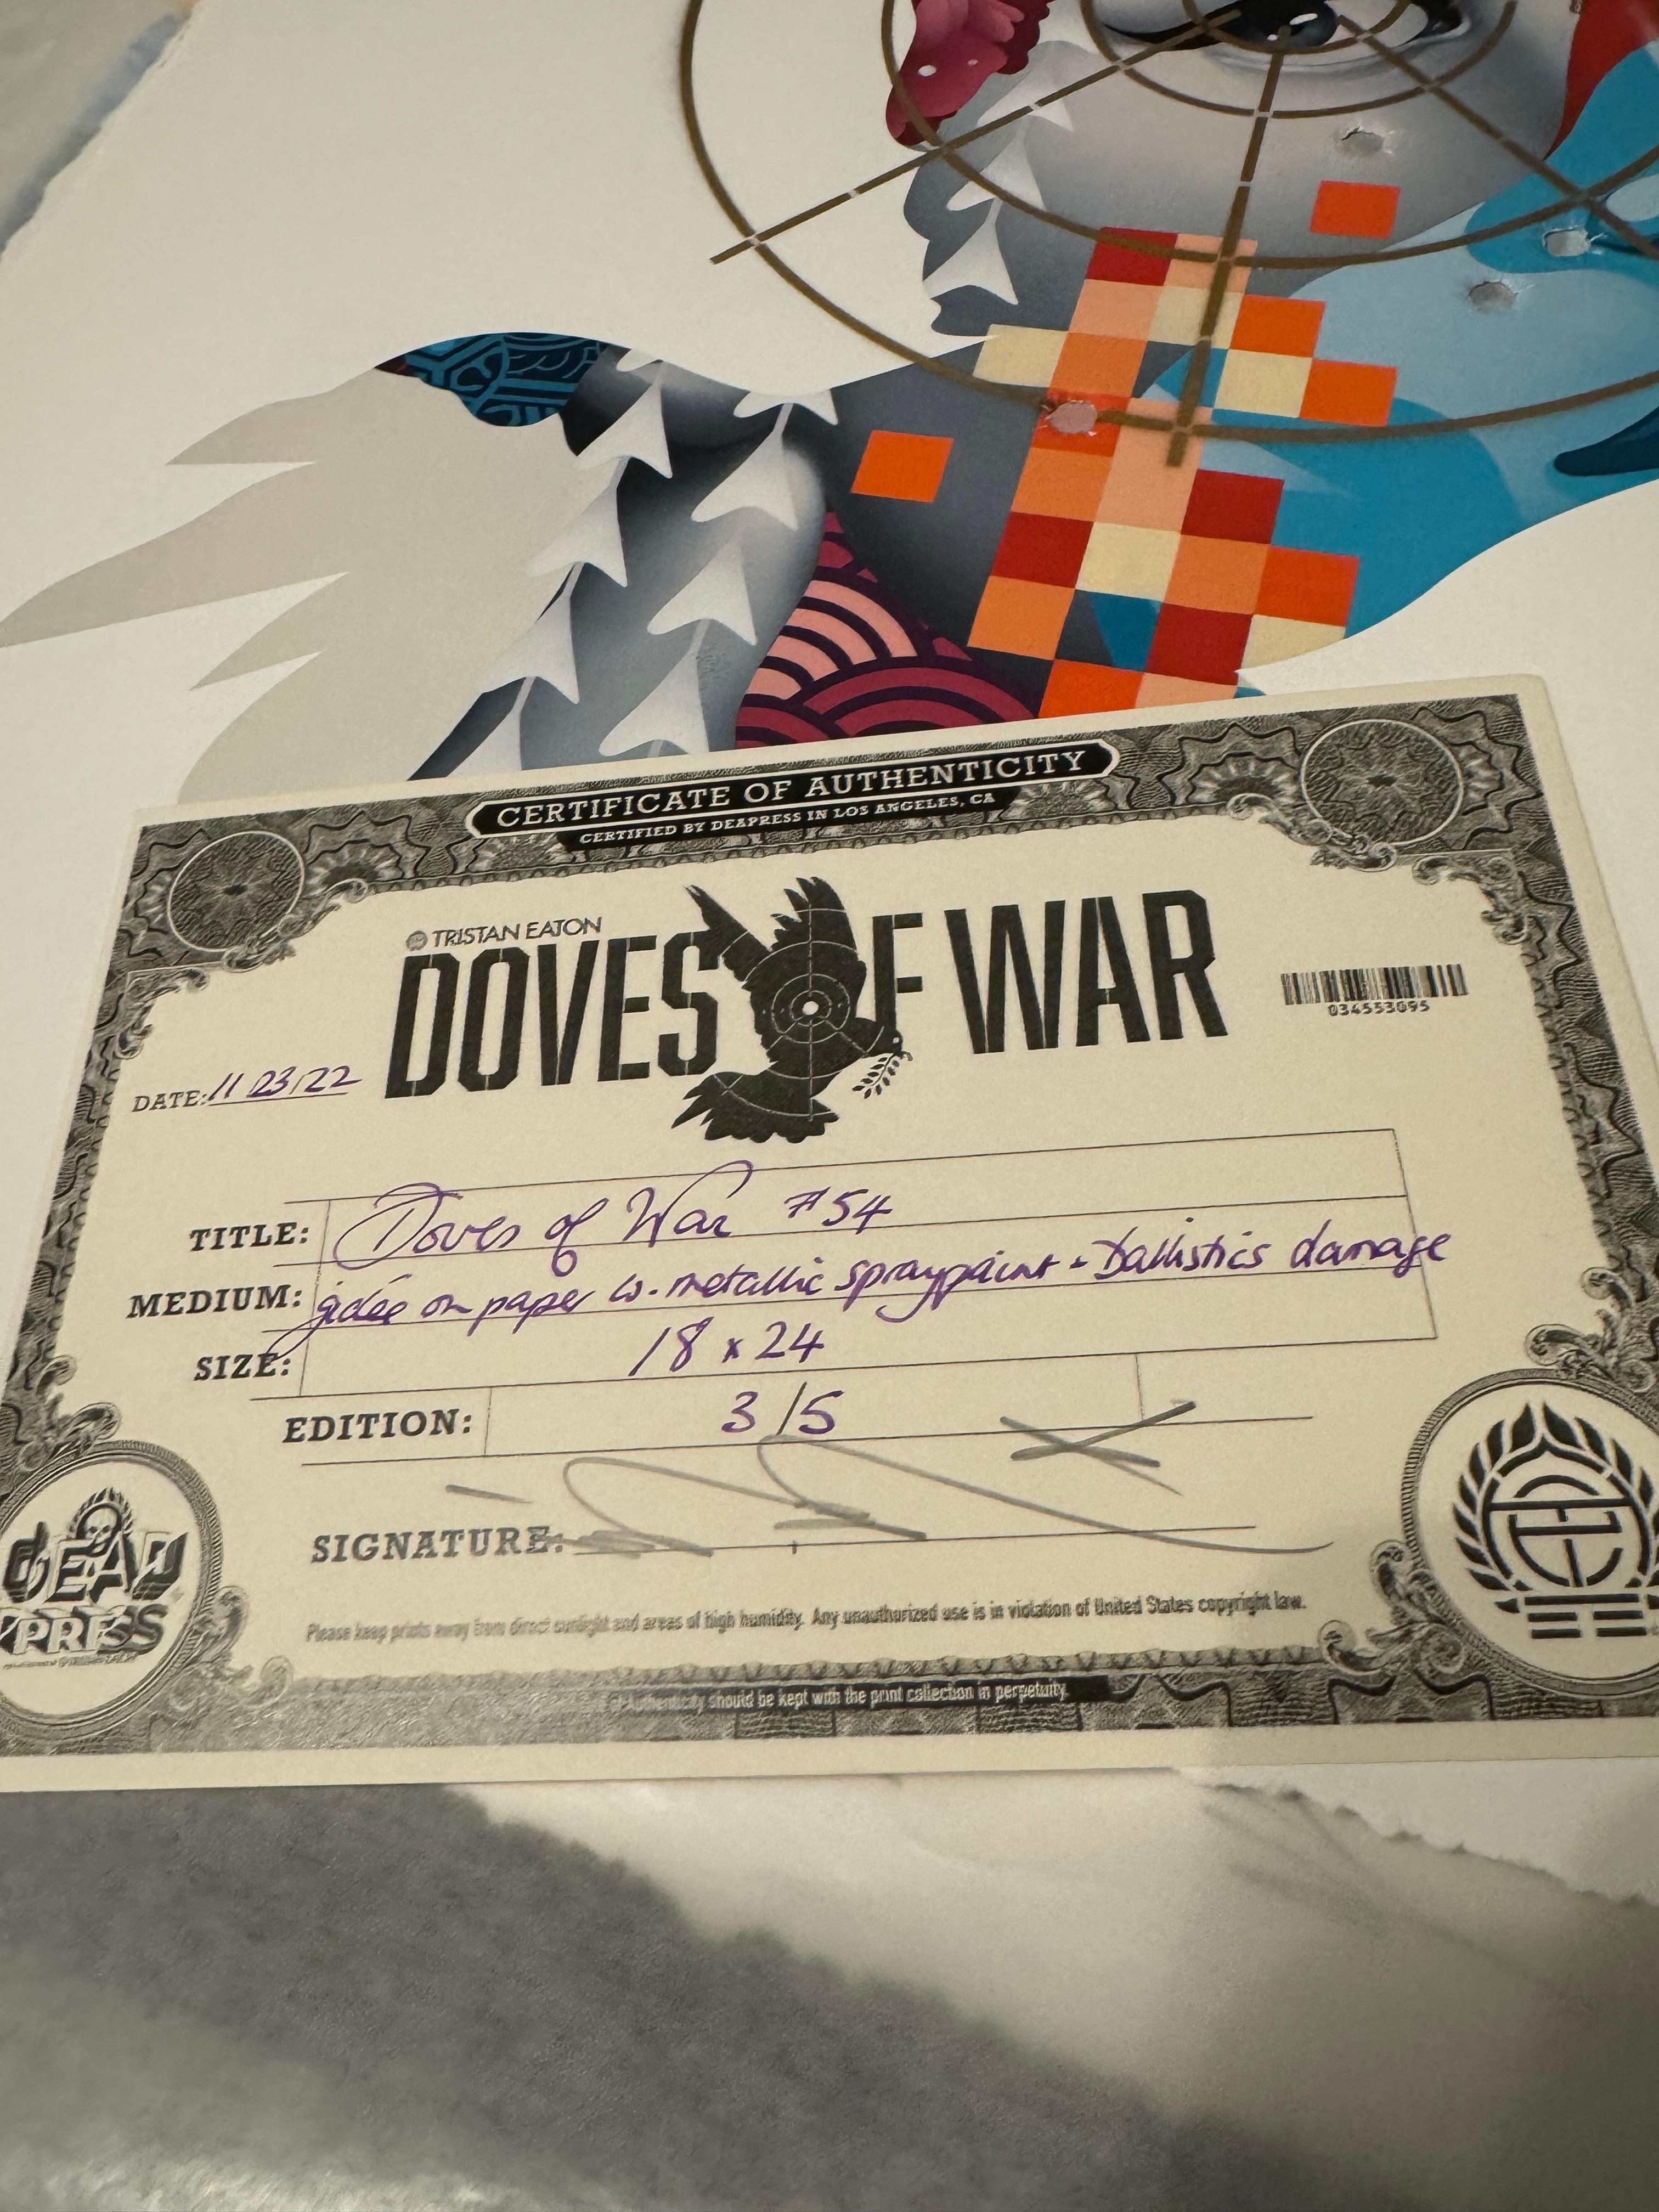 Sérigraphie embellie Doves of War #54 signée et numérotée - Print de Tristan Eaton